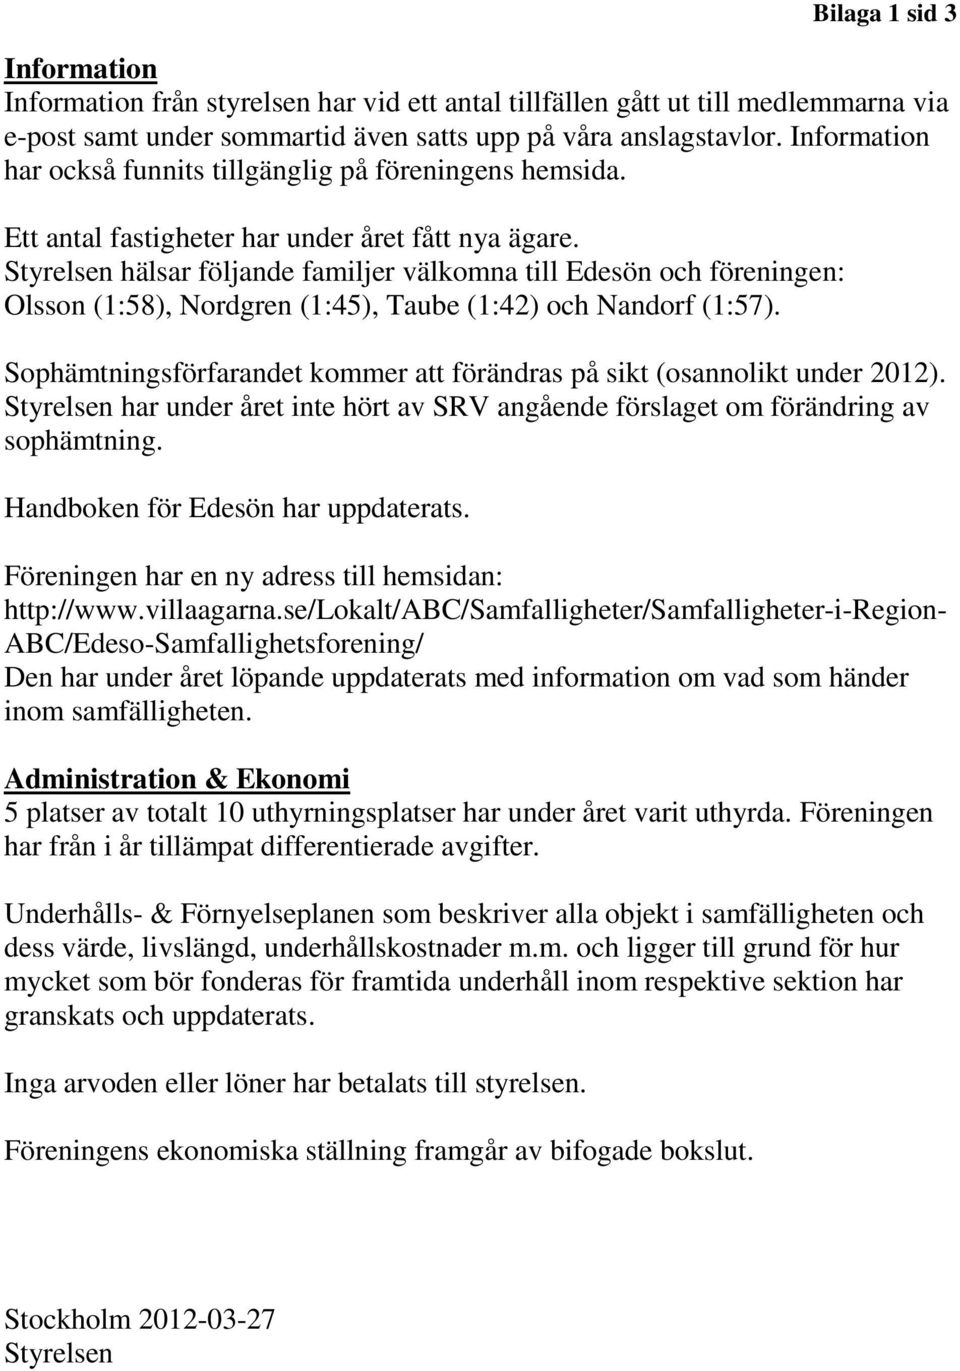 Styrelsen hälsar följande familjer välkomna till Edesön och föreningen: Olsson (1:58), Nordgren (1:45), Taube (1:42) och Nandorf (1:57).